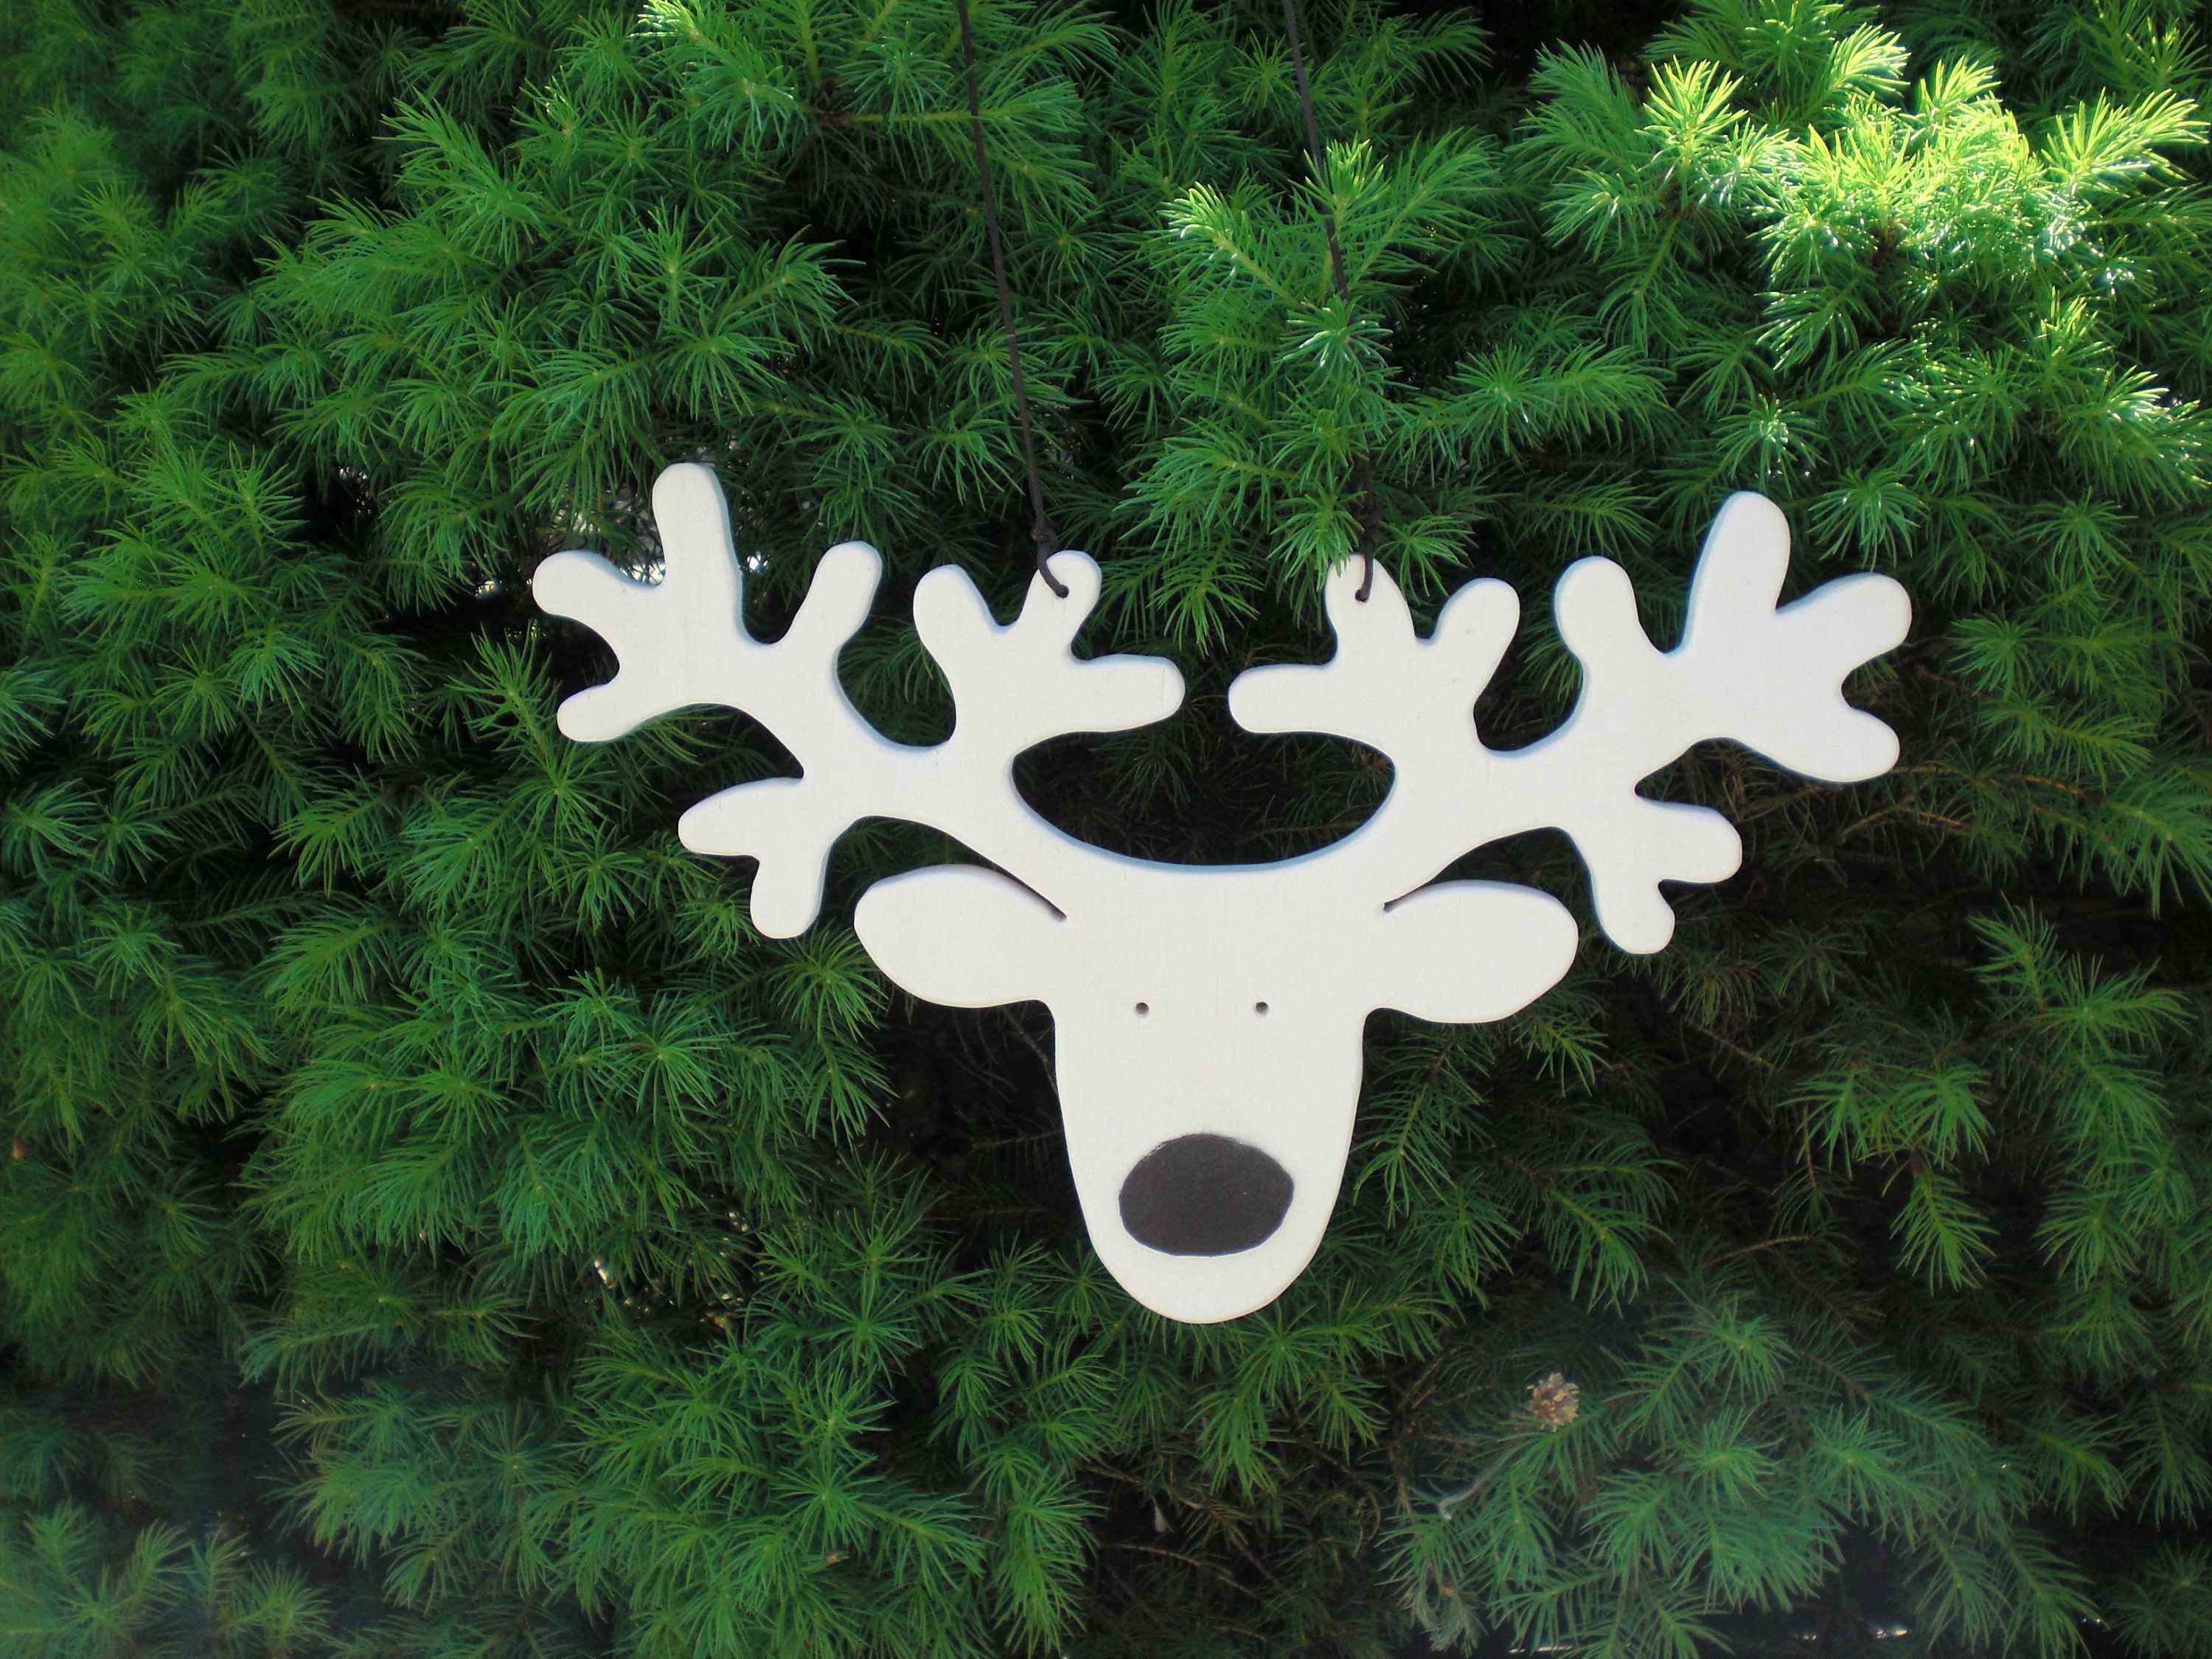 reindeer-antlers-made-of-wood-suitable-as-advent-calendar-or-etsy